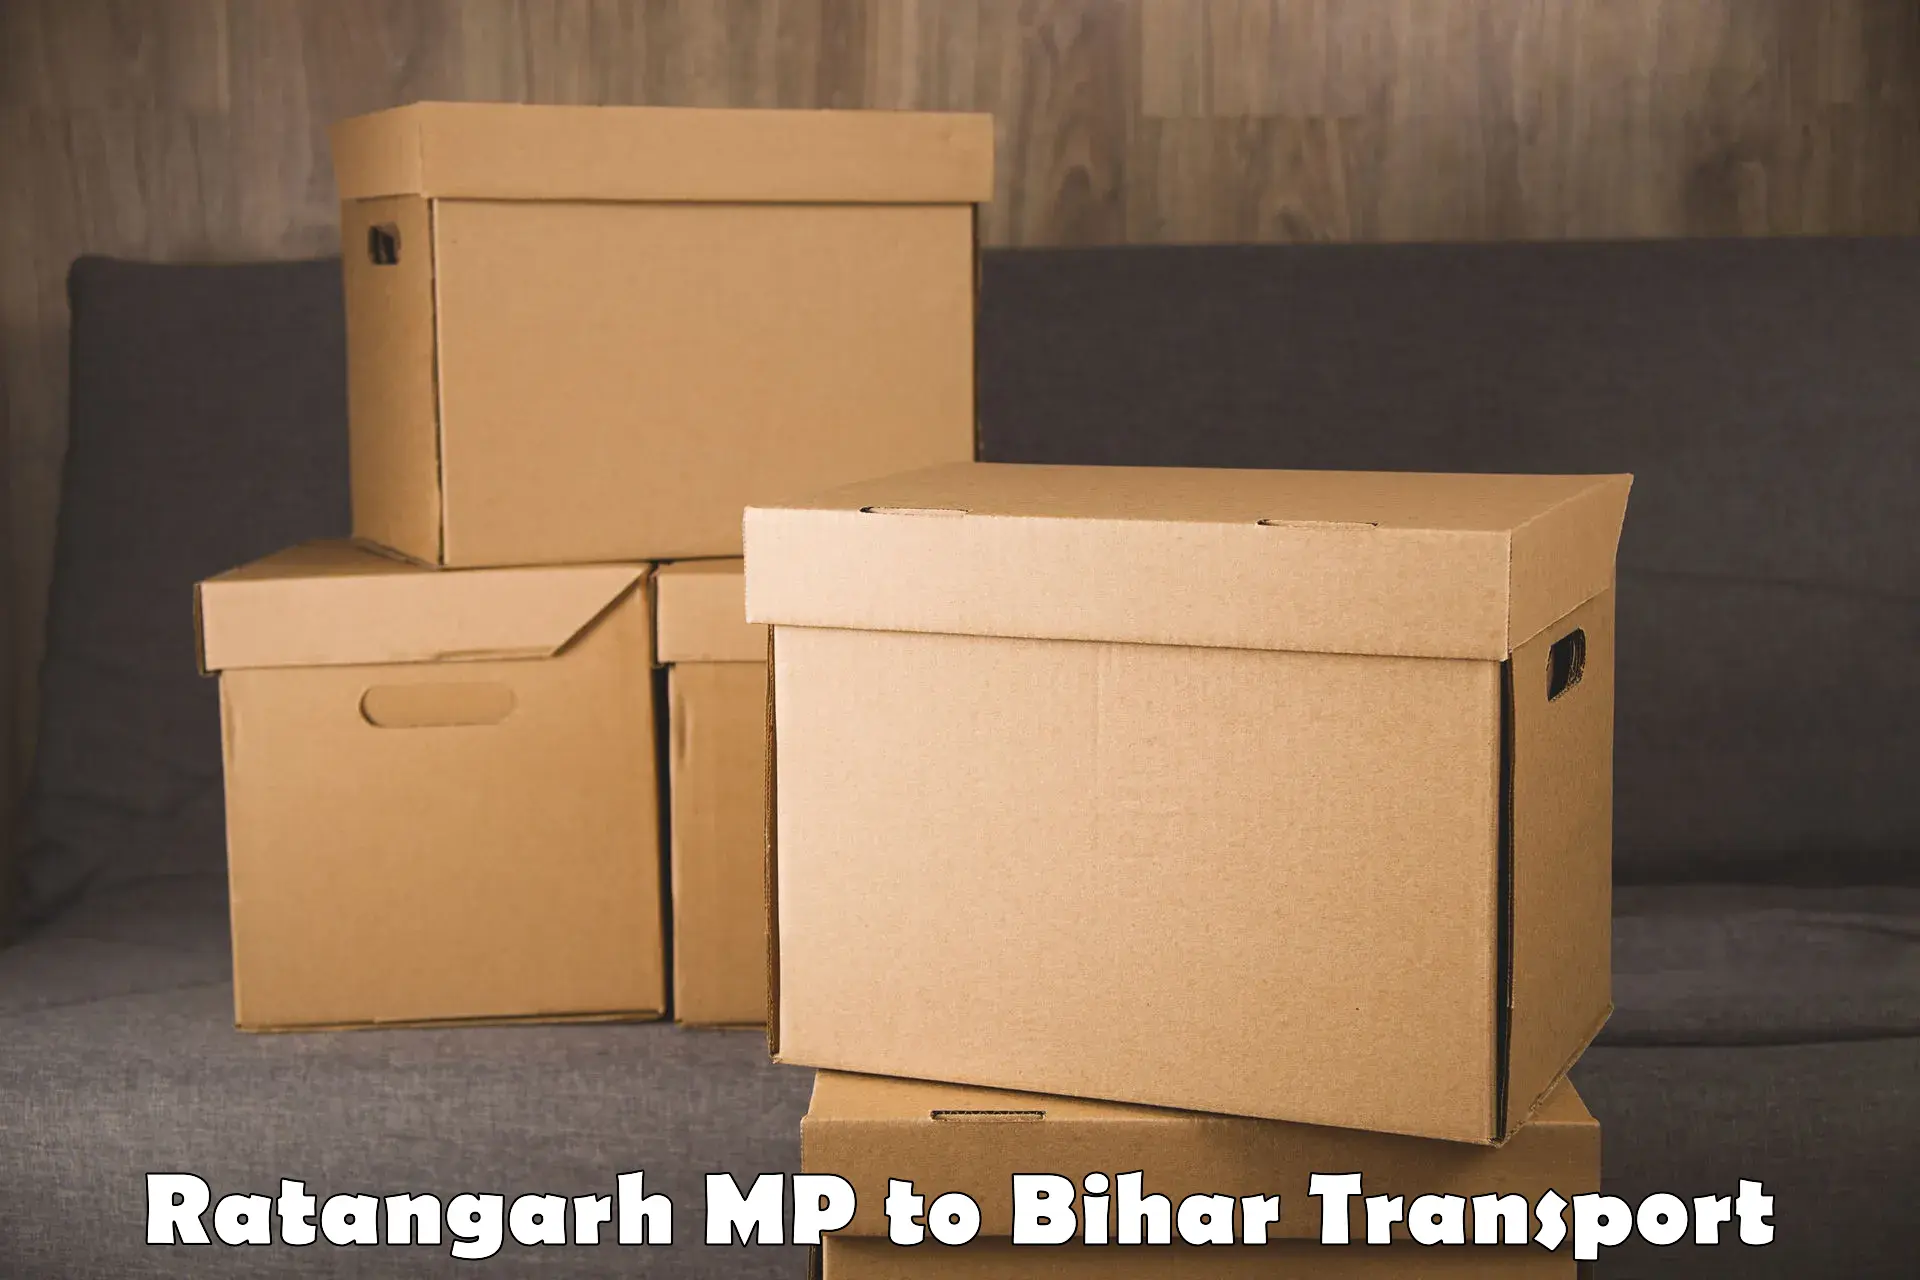 Pick up transport service Ratangarh MP to Madhubani